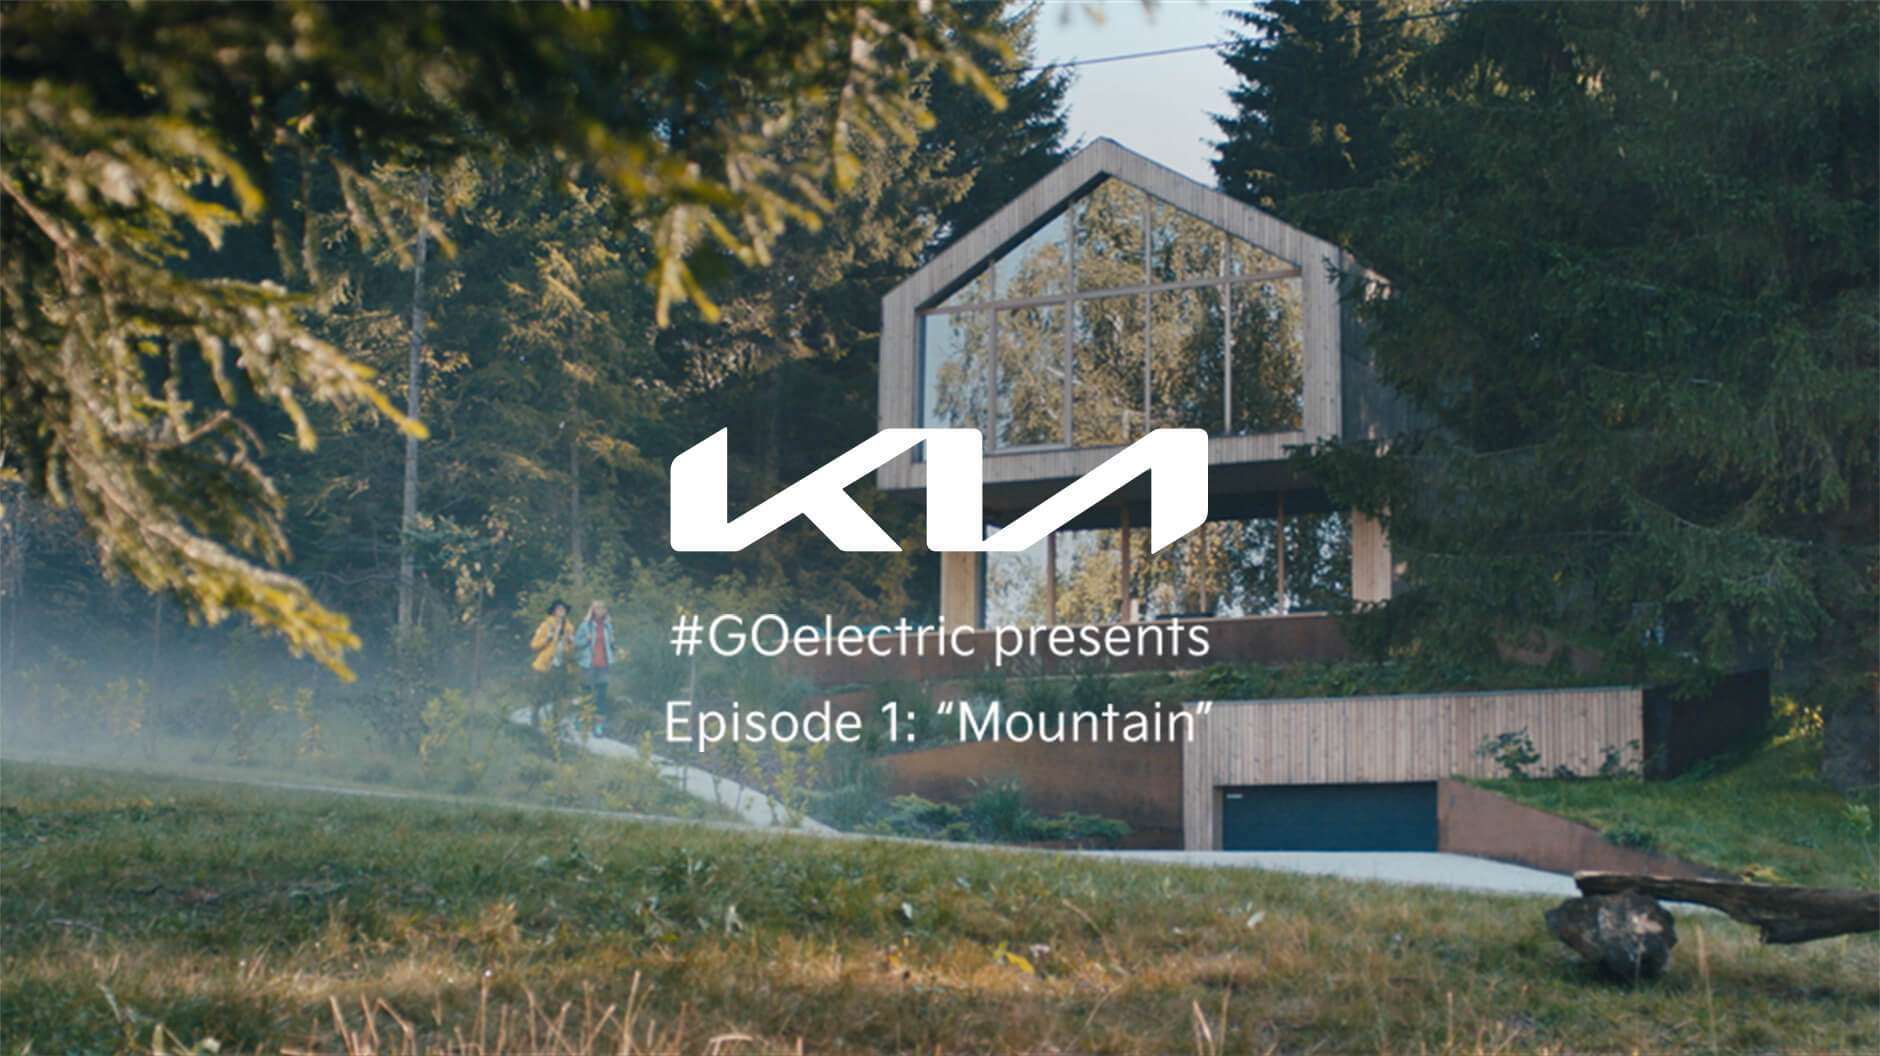 #GoElectric presenta Episode 1: "The Mountain"